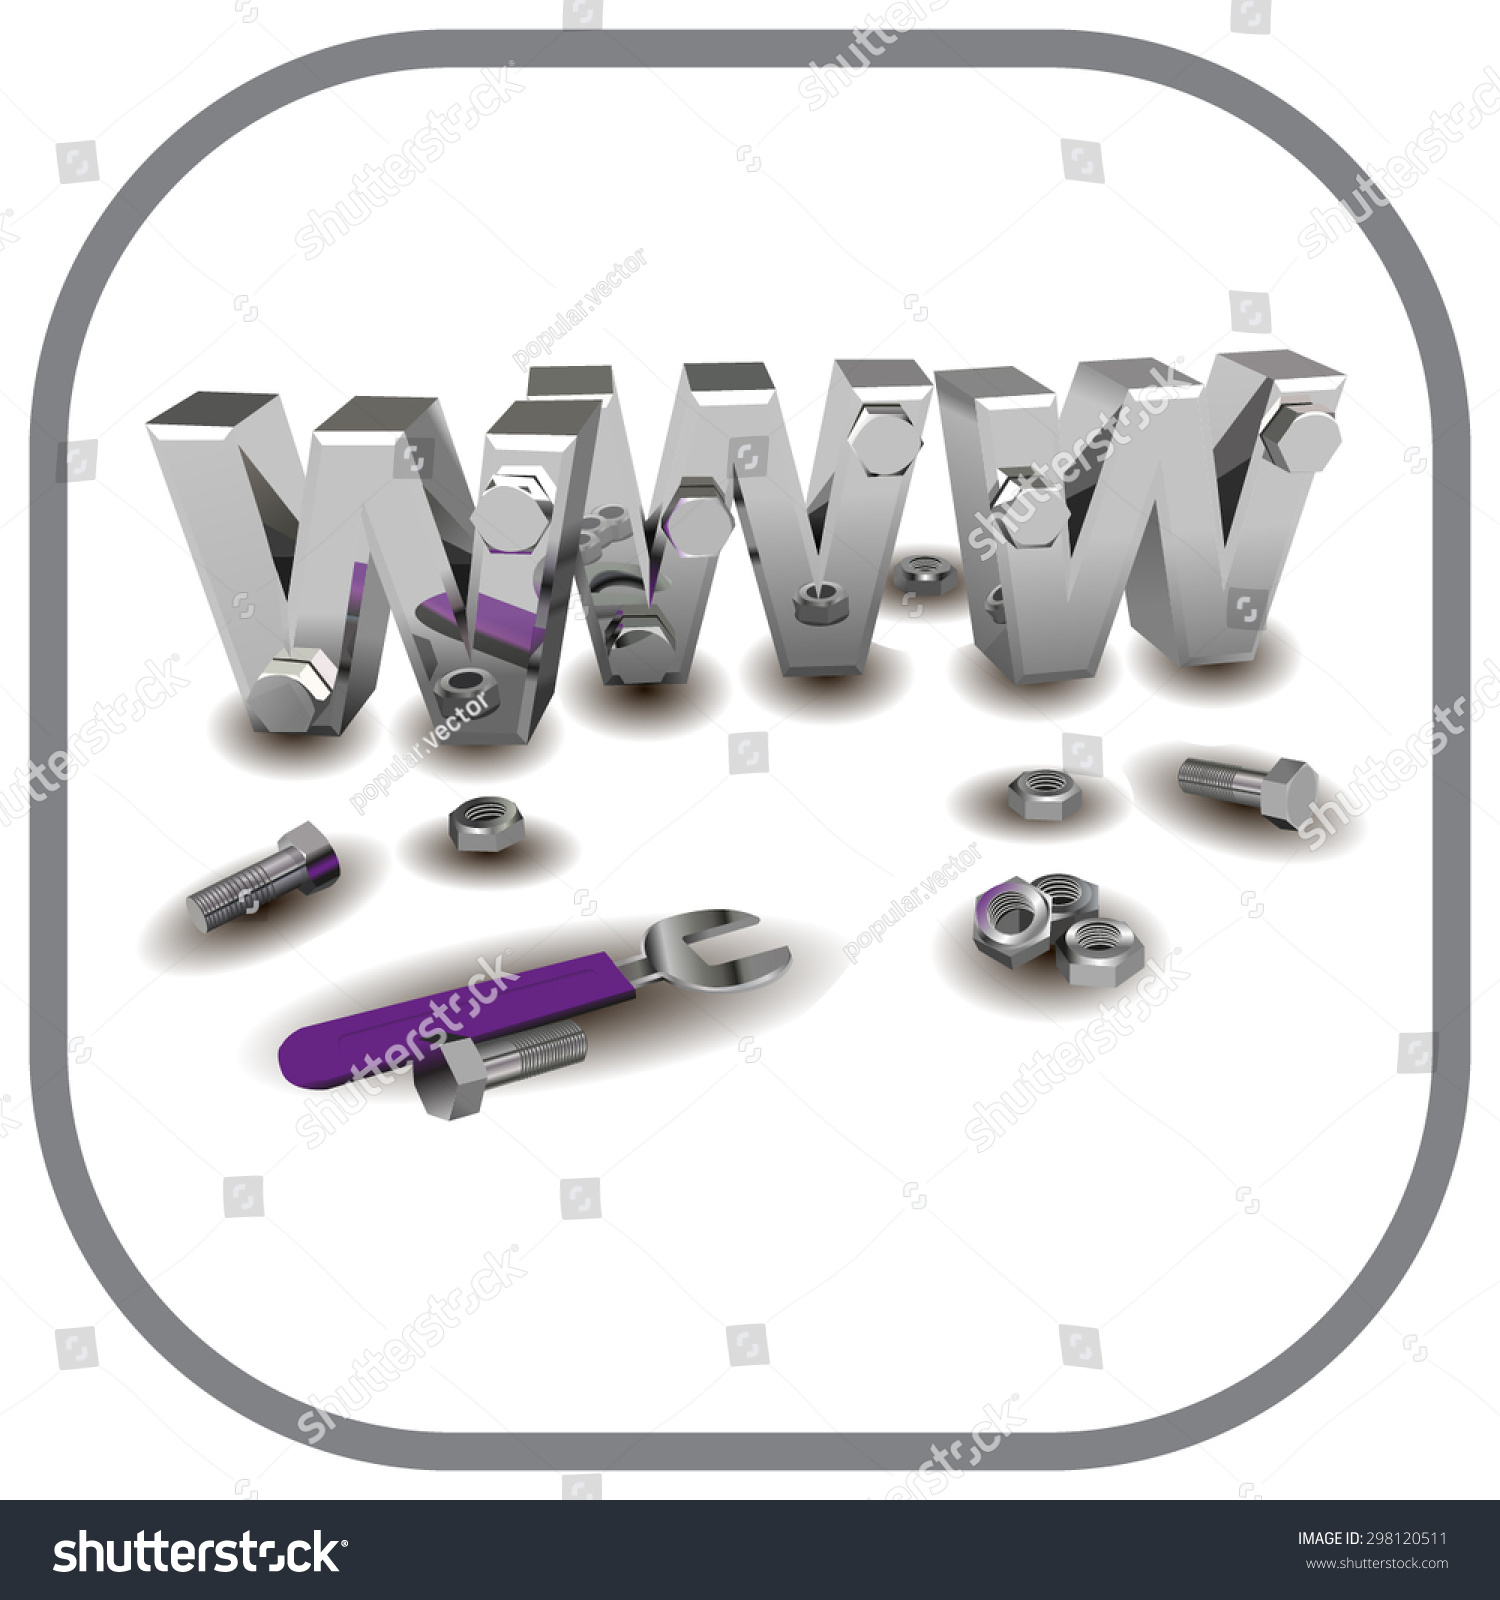 Internet Repair Wrench Www Metallic Screws Stock Vector 298120511 ...